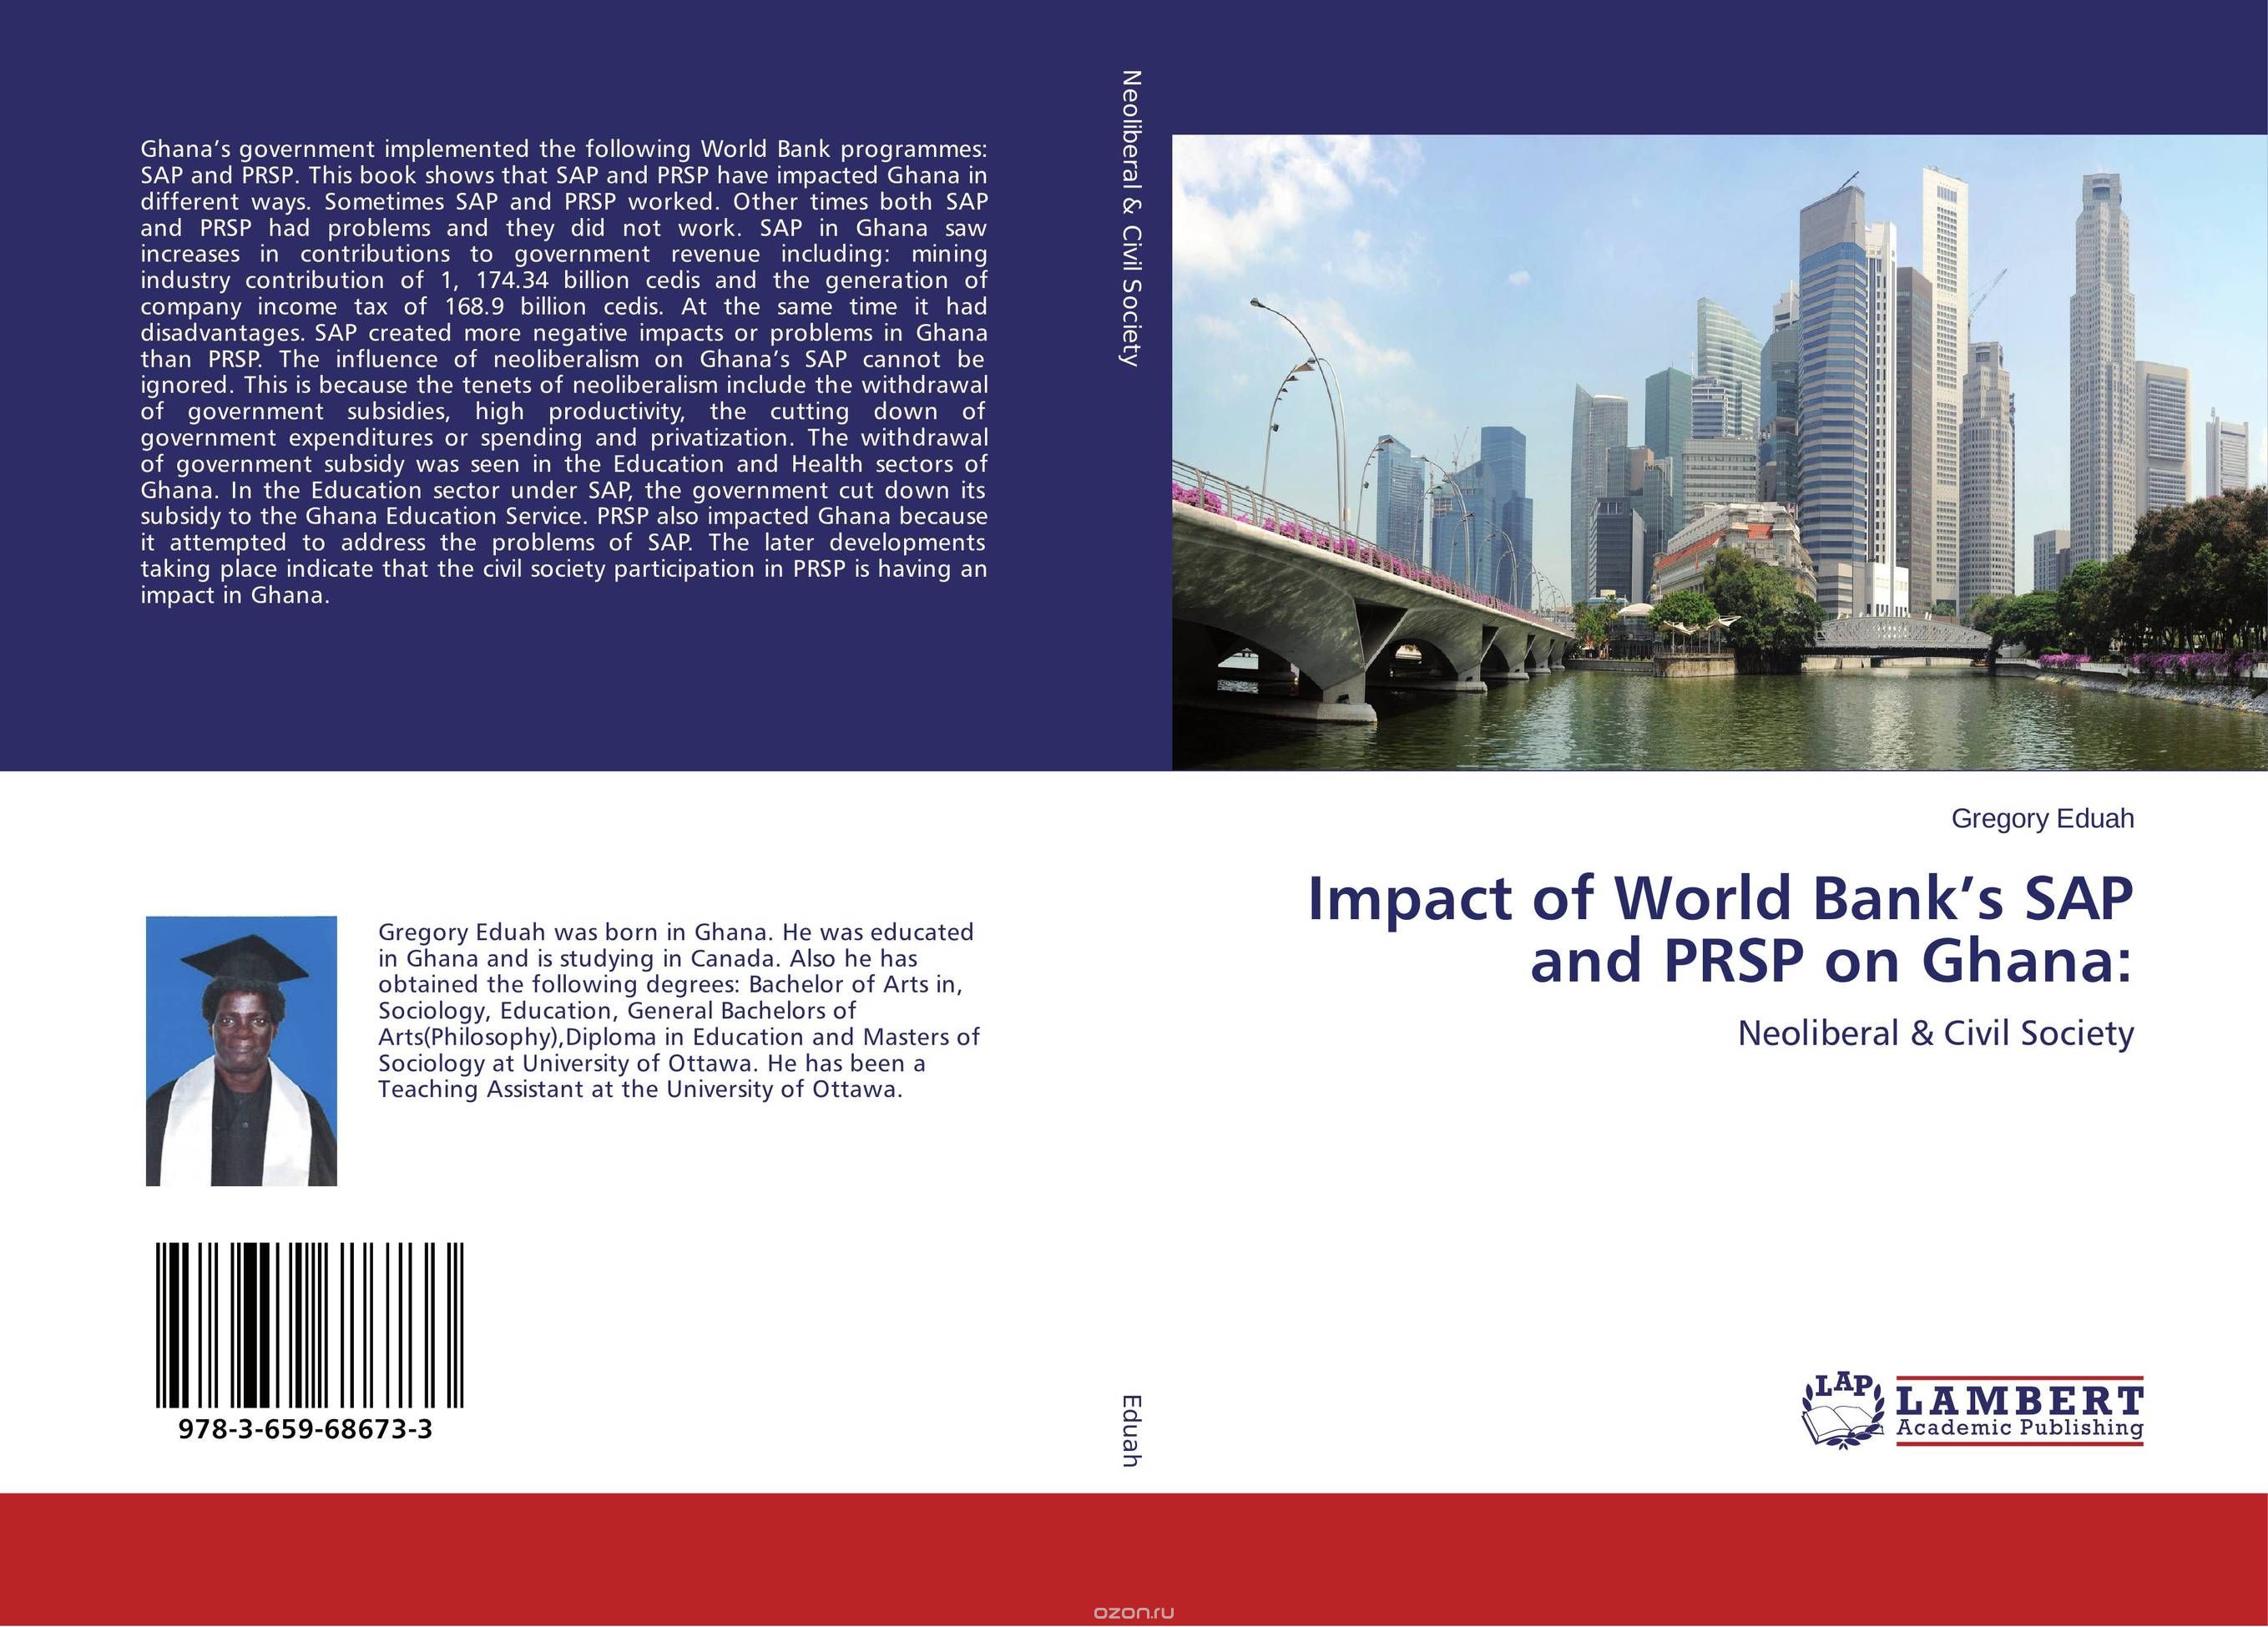 Impact of World Bank’s SAP and PRSP on Ghana: